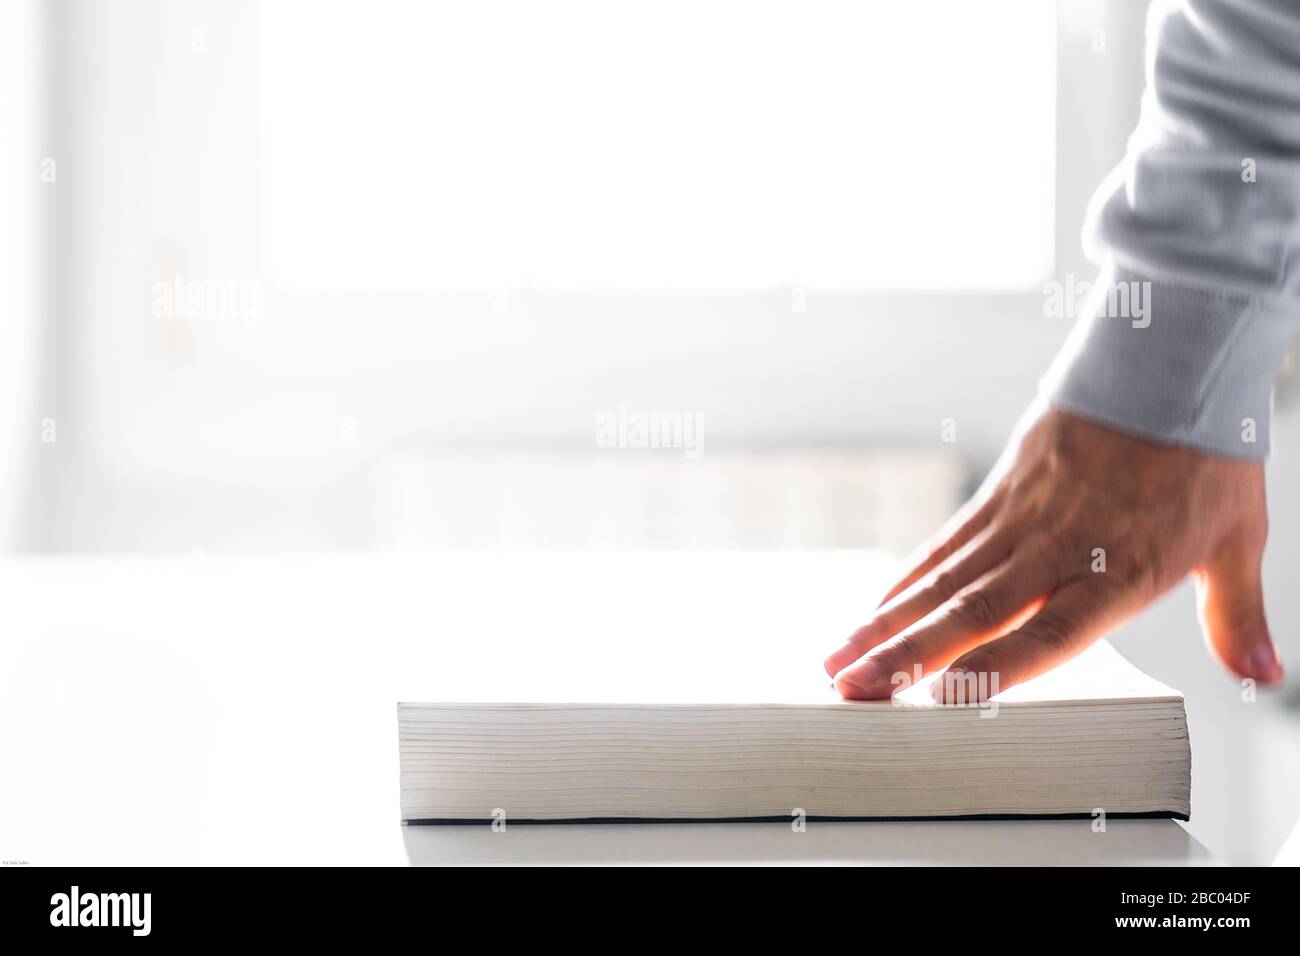 Chiusura di un libro con la mano su un tavolo bianco con la luce dalla finestra sullo sfondo Foto Stock